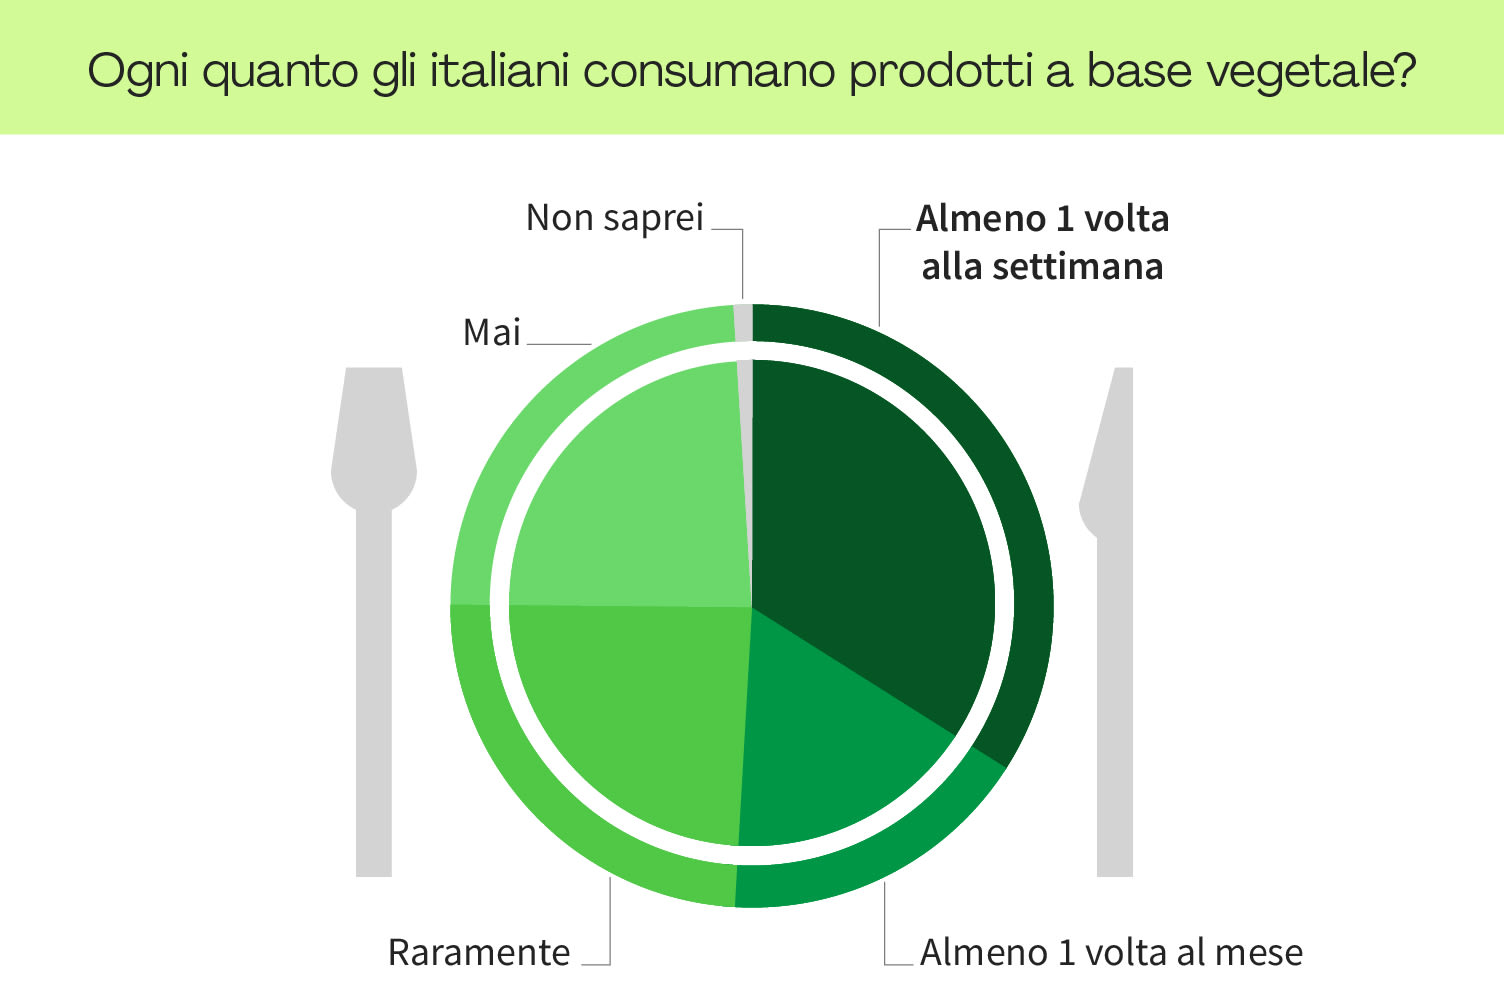 <h2>1 italiano su 3 mangia vegetariano almeno una volta a settimana</h2>